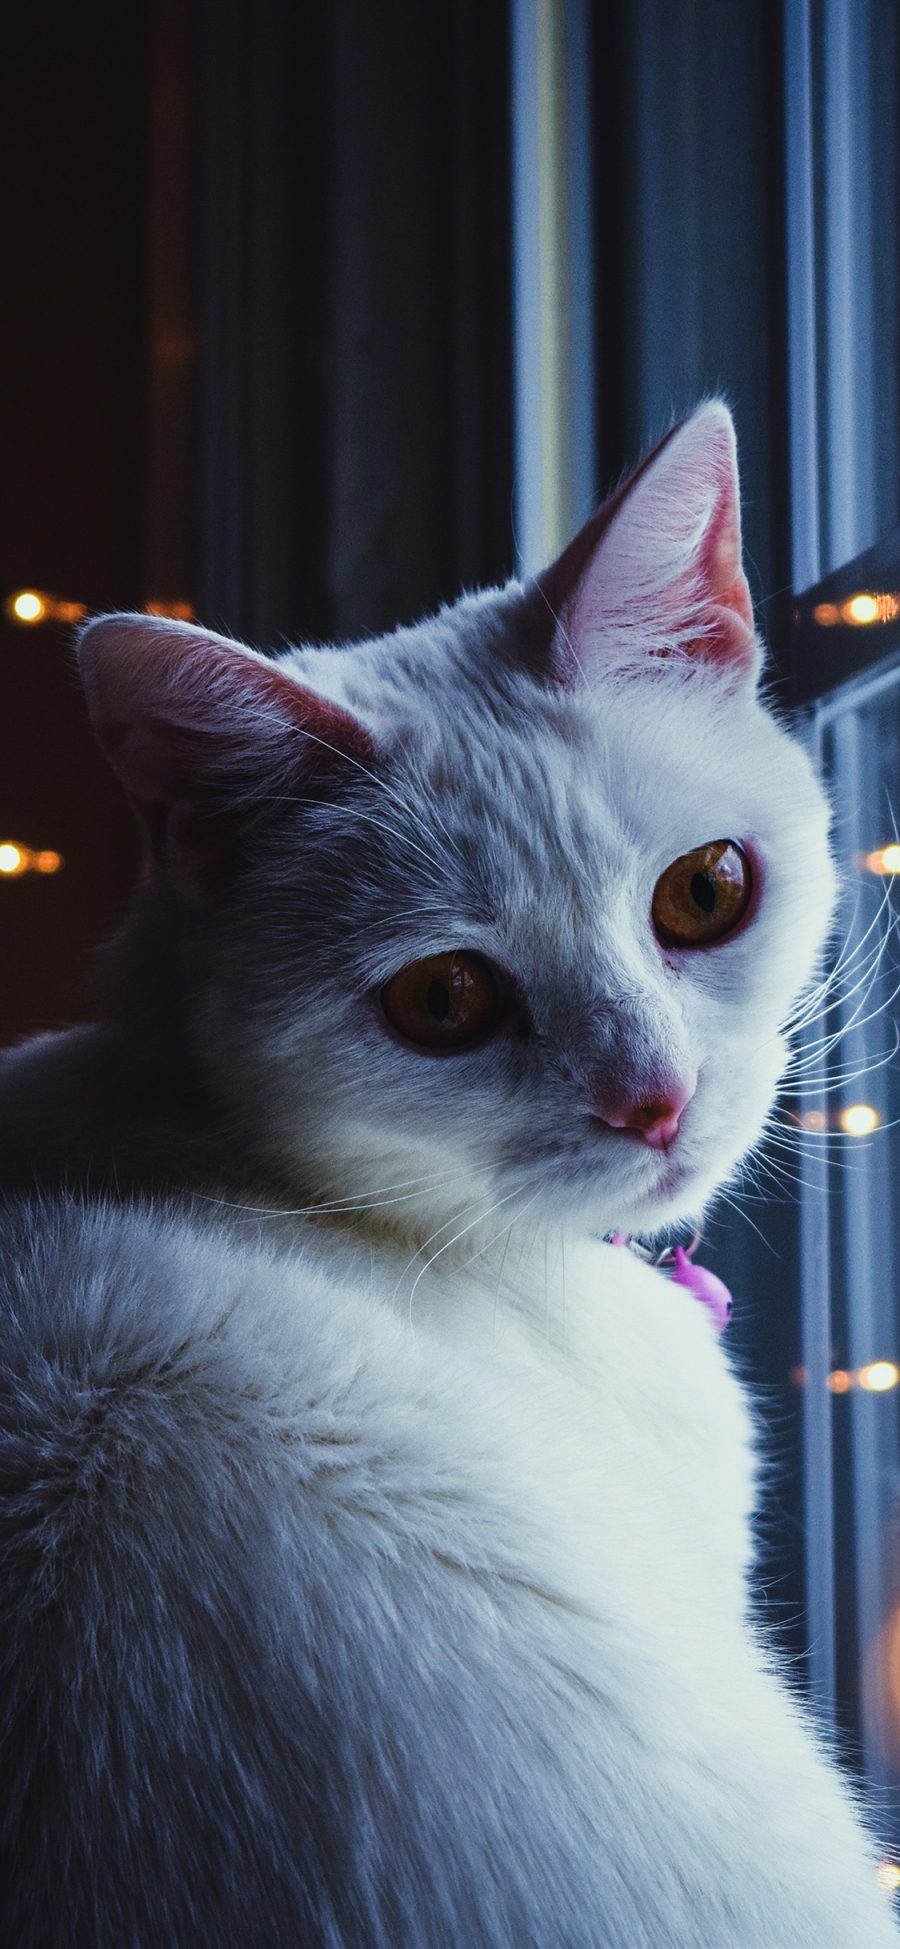 [2436×1125]猫咪 喵星人 窗边 萌 宠物 苹果手机壁纸图片